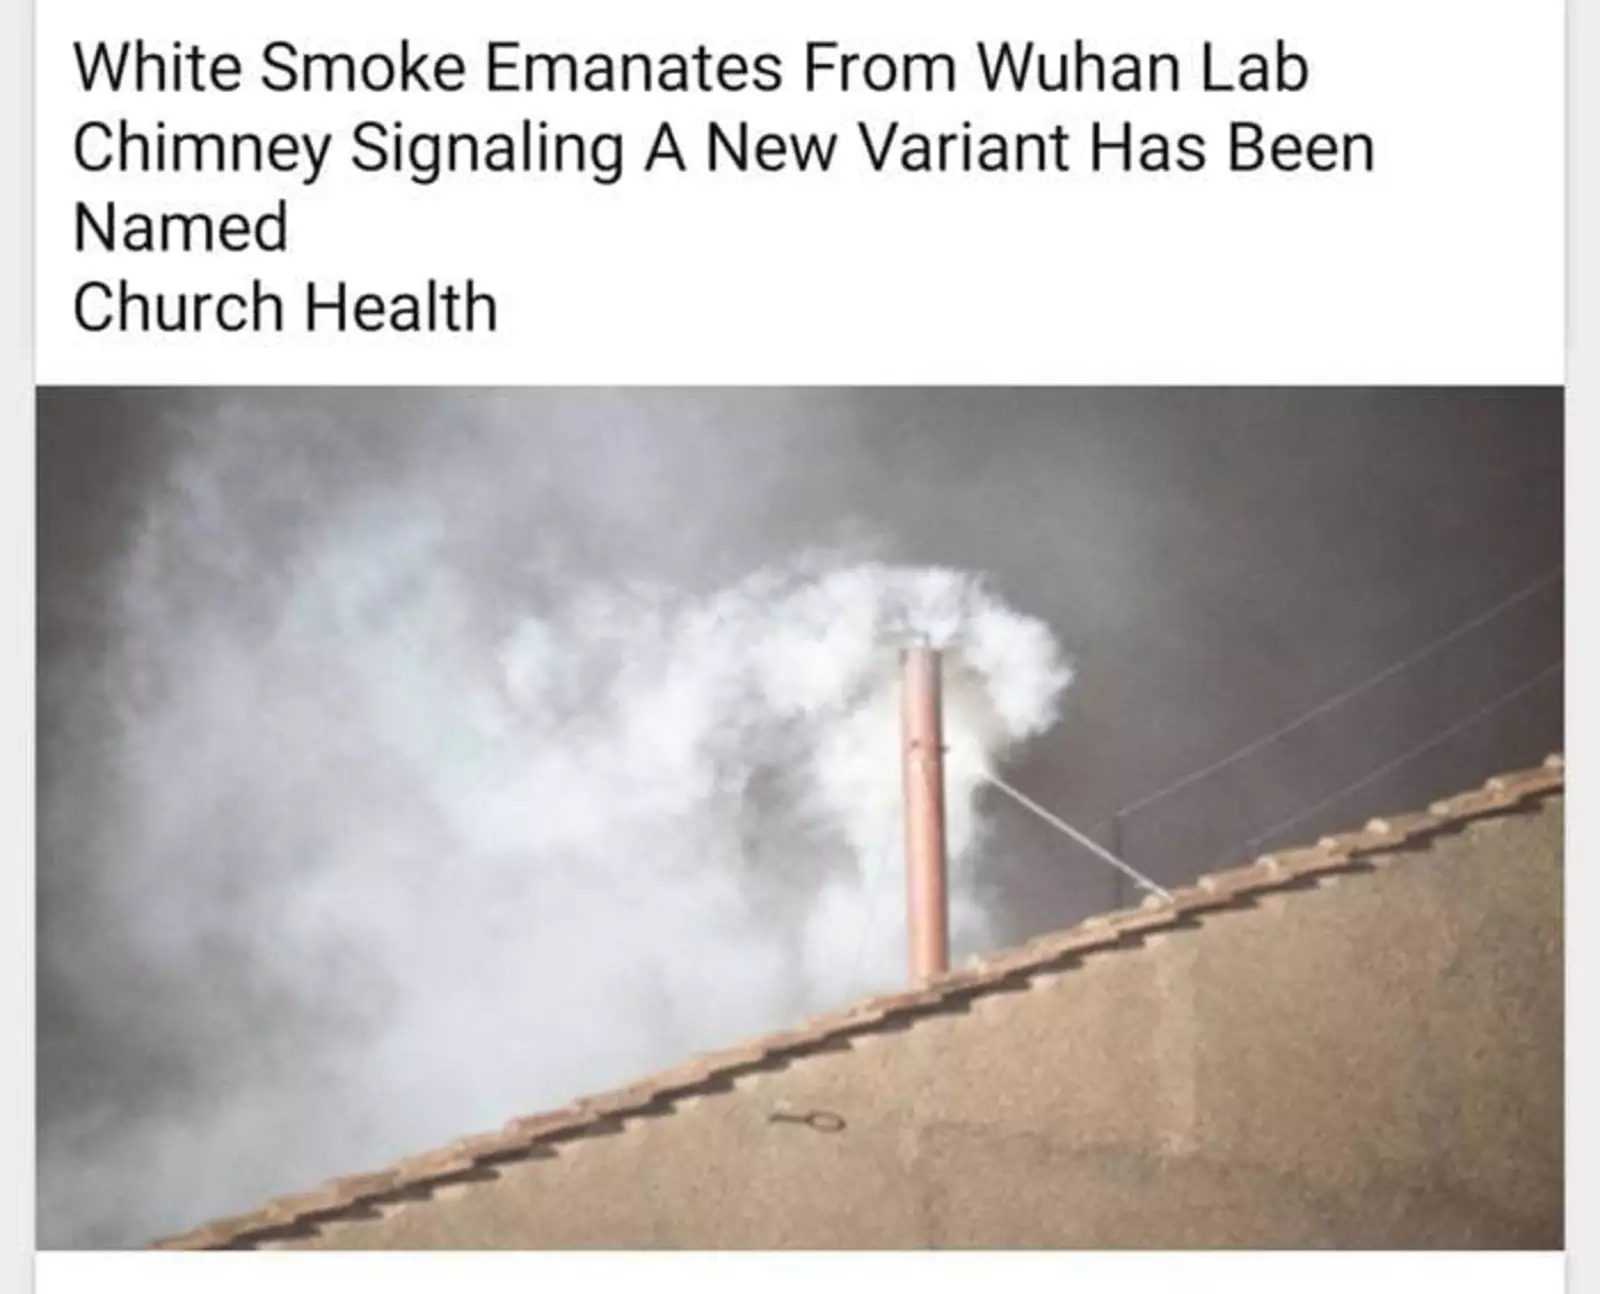 «Белый дым показался из трубы лаборатории в Ухане, означая, что стало известно имя нового штамма».